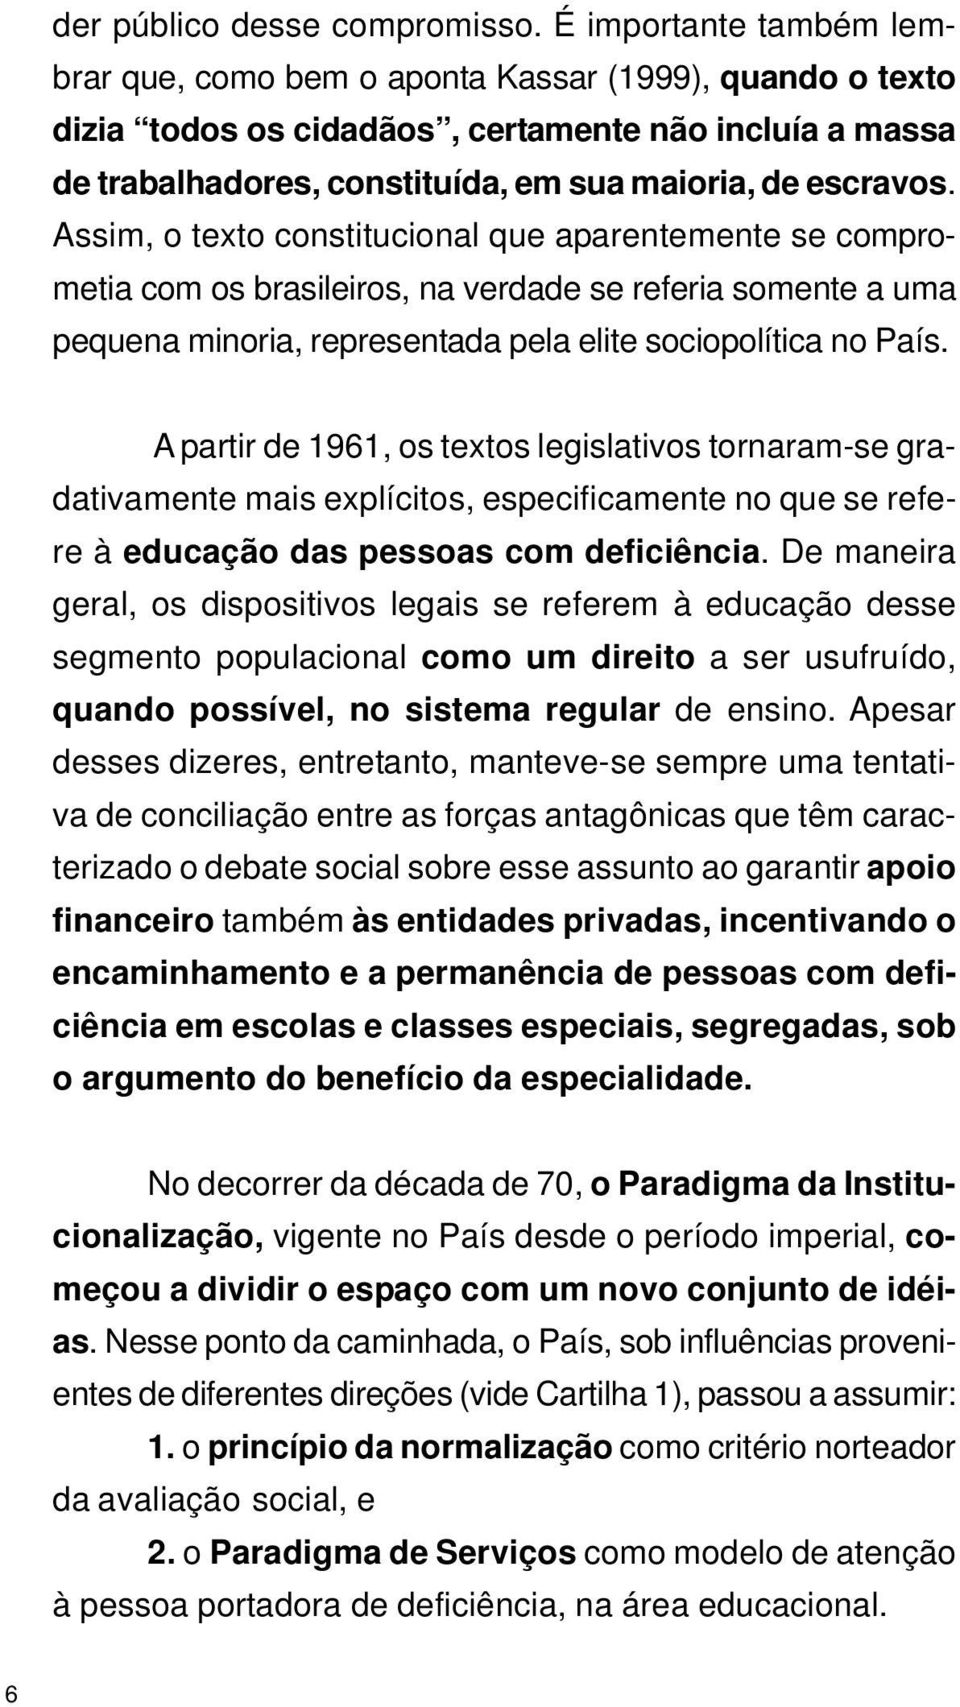 Assim, o texto constitucional que aparentemente se comprometia com os brasileiros, na verdade se referia somente a uma pequena minoria, representada pela elite sociopolítica no País.